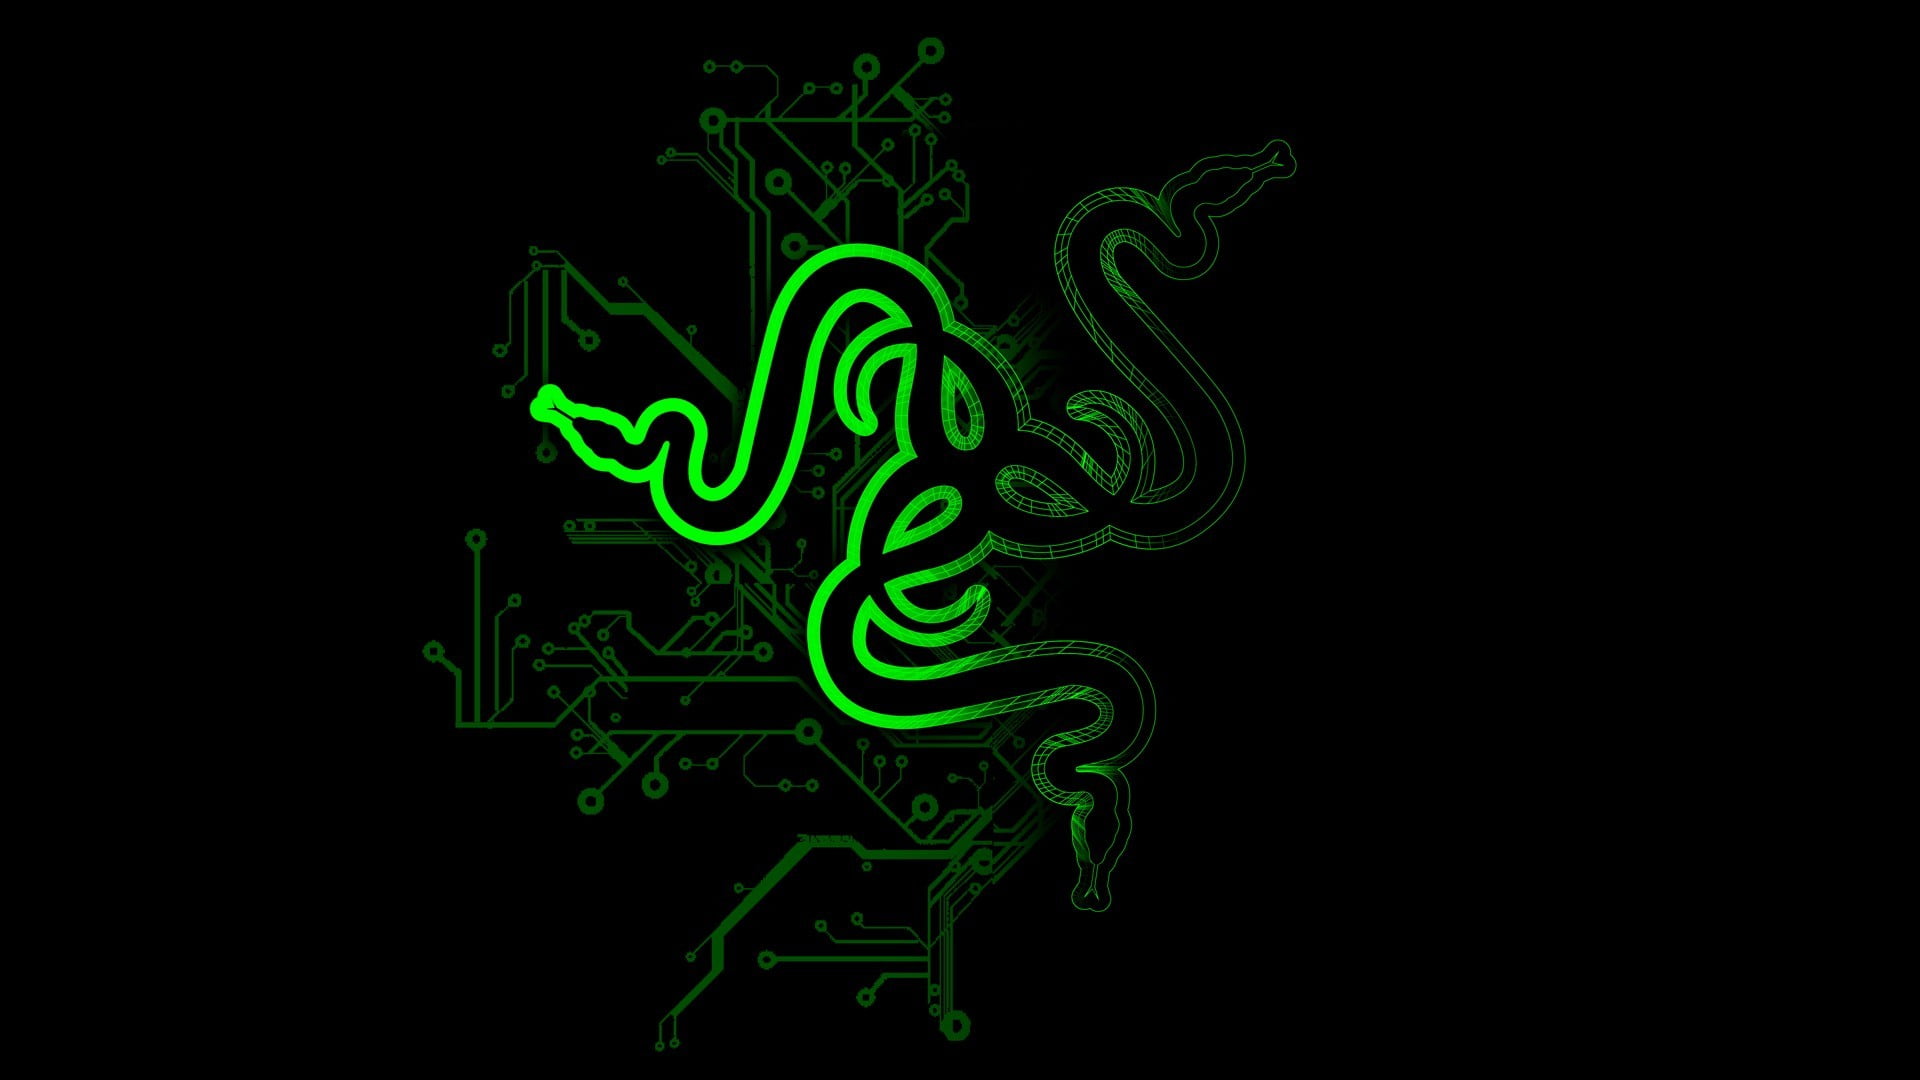 black and green Razer gaming mouse, Razer Inc., Razer, logo